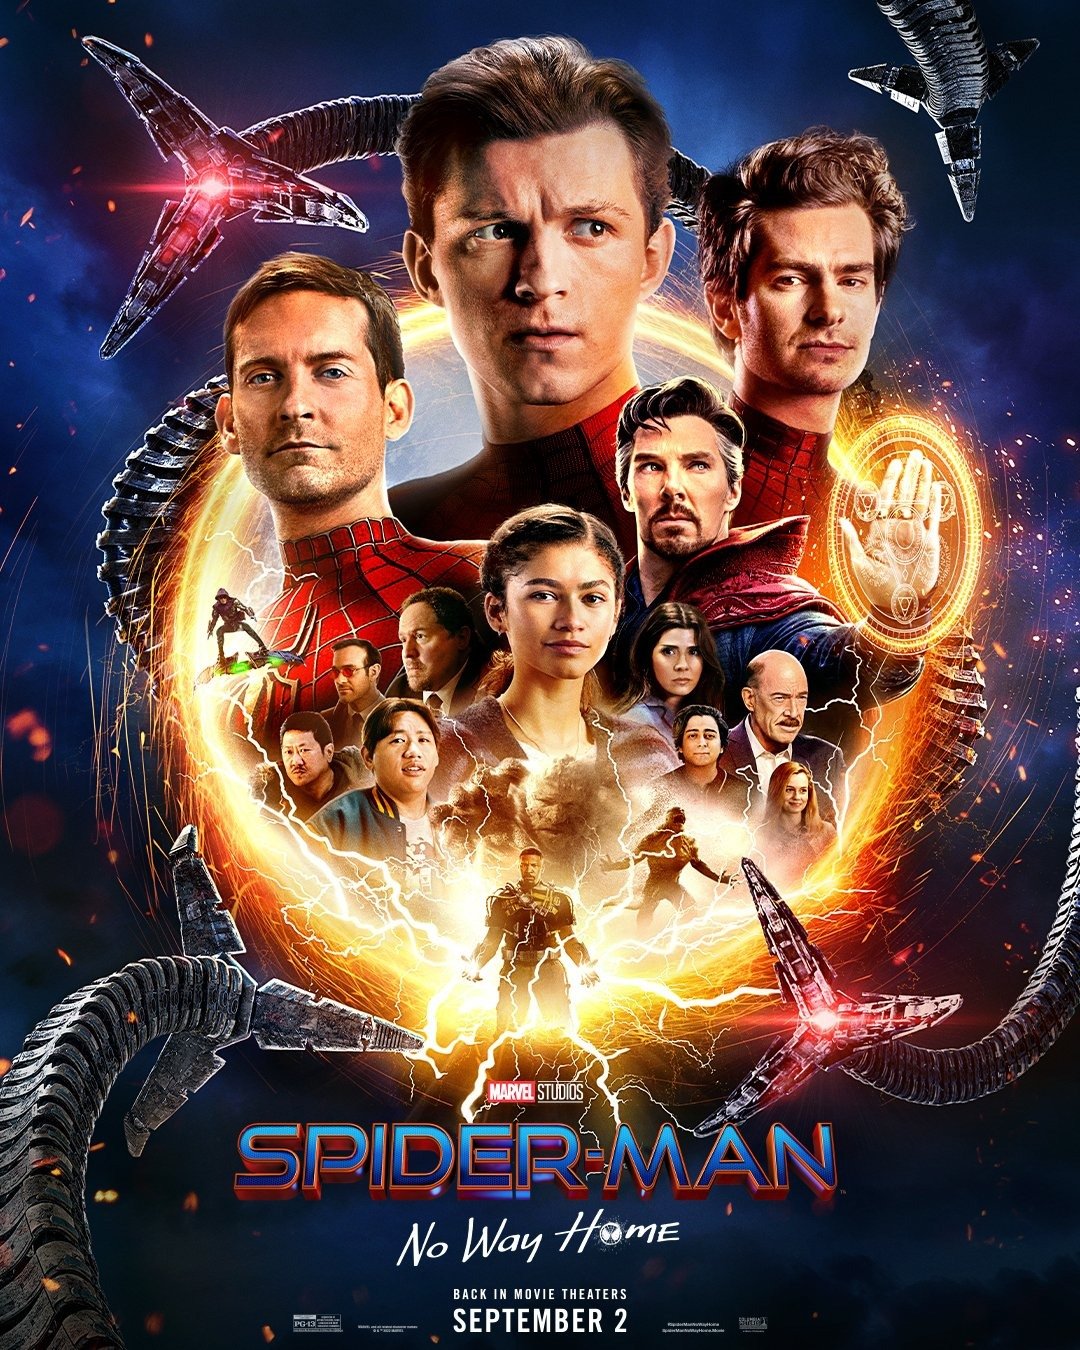 Homem-Aranha 3: Pôster com Doutor Estranho e trailer amanhã!